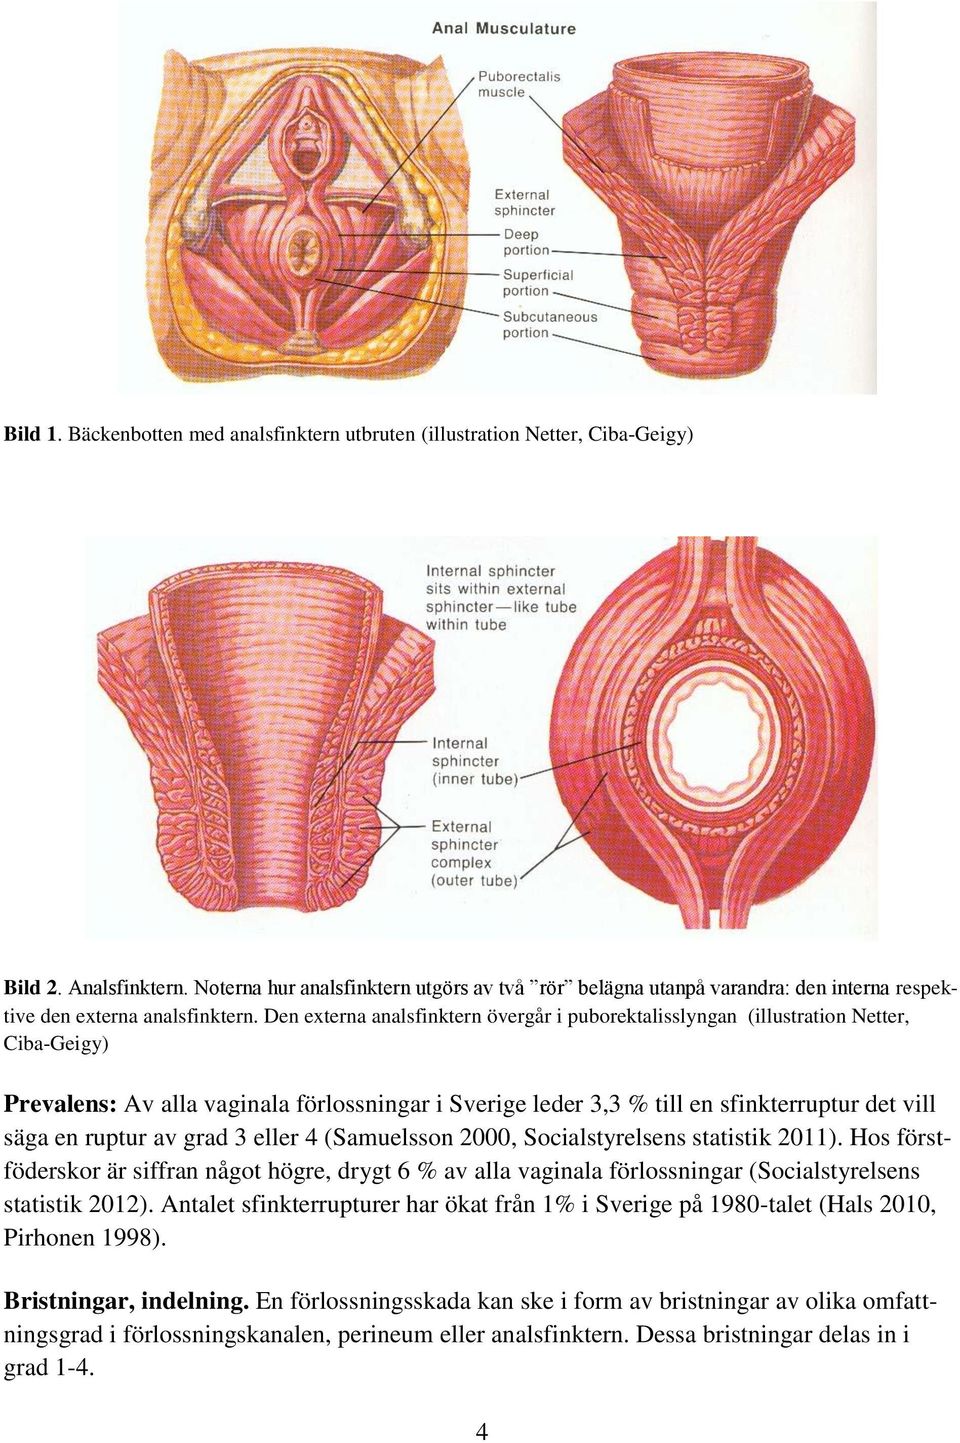 Den externa analsfinktern övergår i puborektalisslyngan (illustration Netter, Ciba-Geigy) Prevalens: Av alla vaginala förlossningar i Sverige leder 3,3 % till en sfinkterruptur det vill säga en